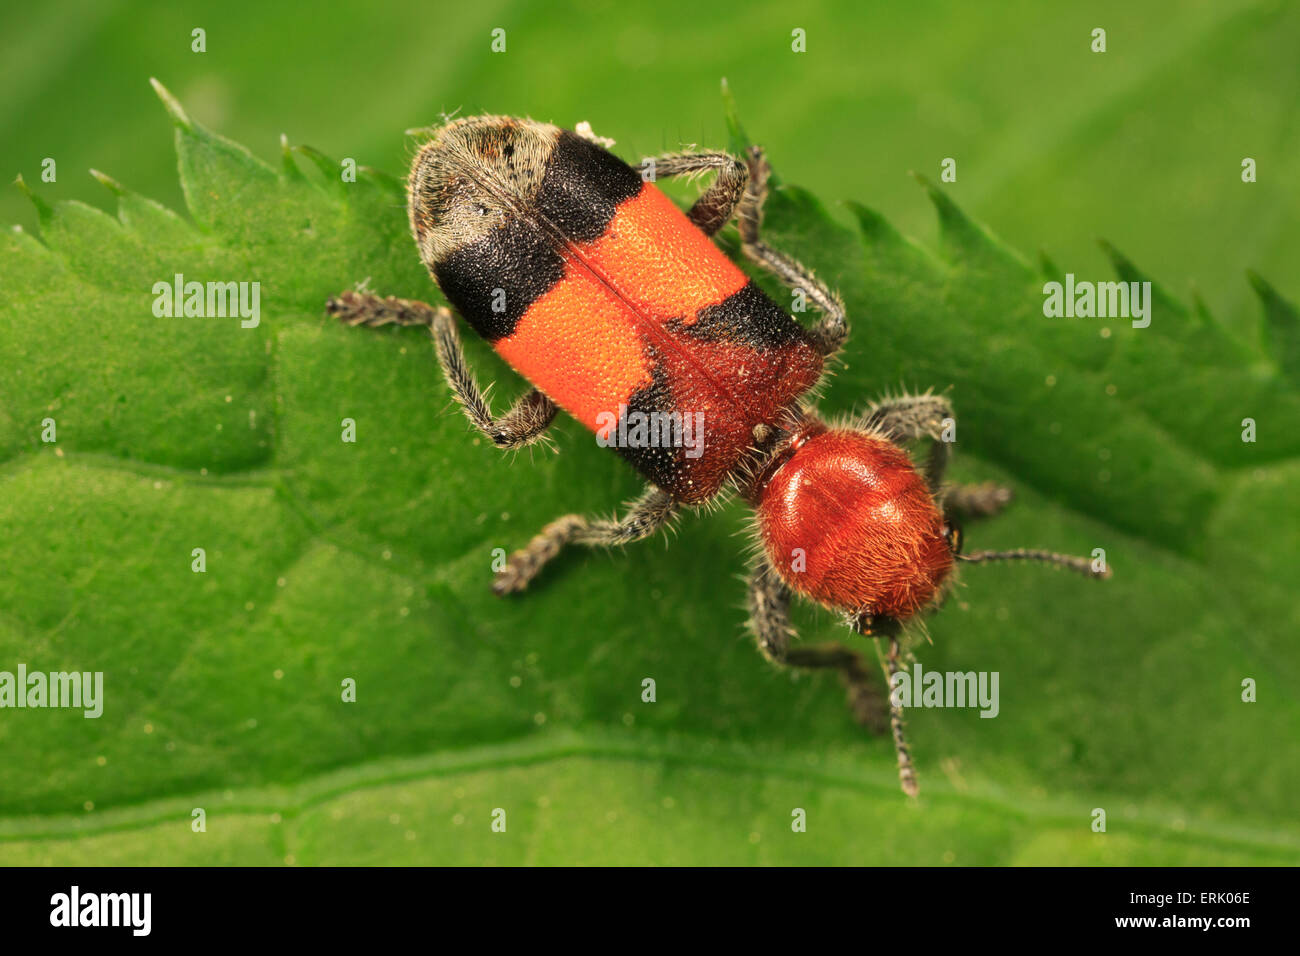 Karierte Käfer (Enoclerus Ichneumoneus) auf Blatt. Stockfoto